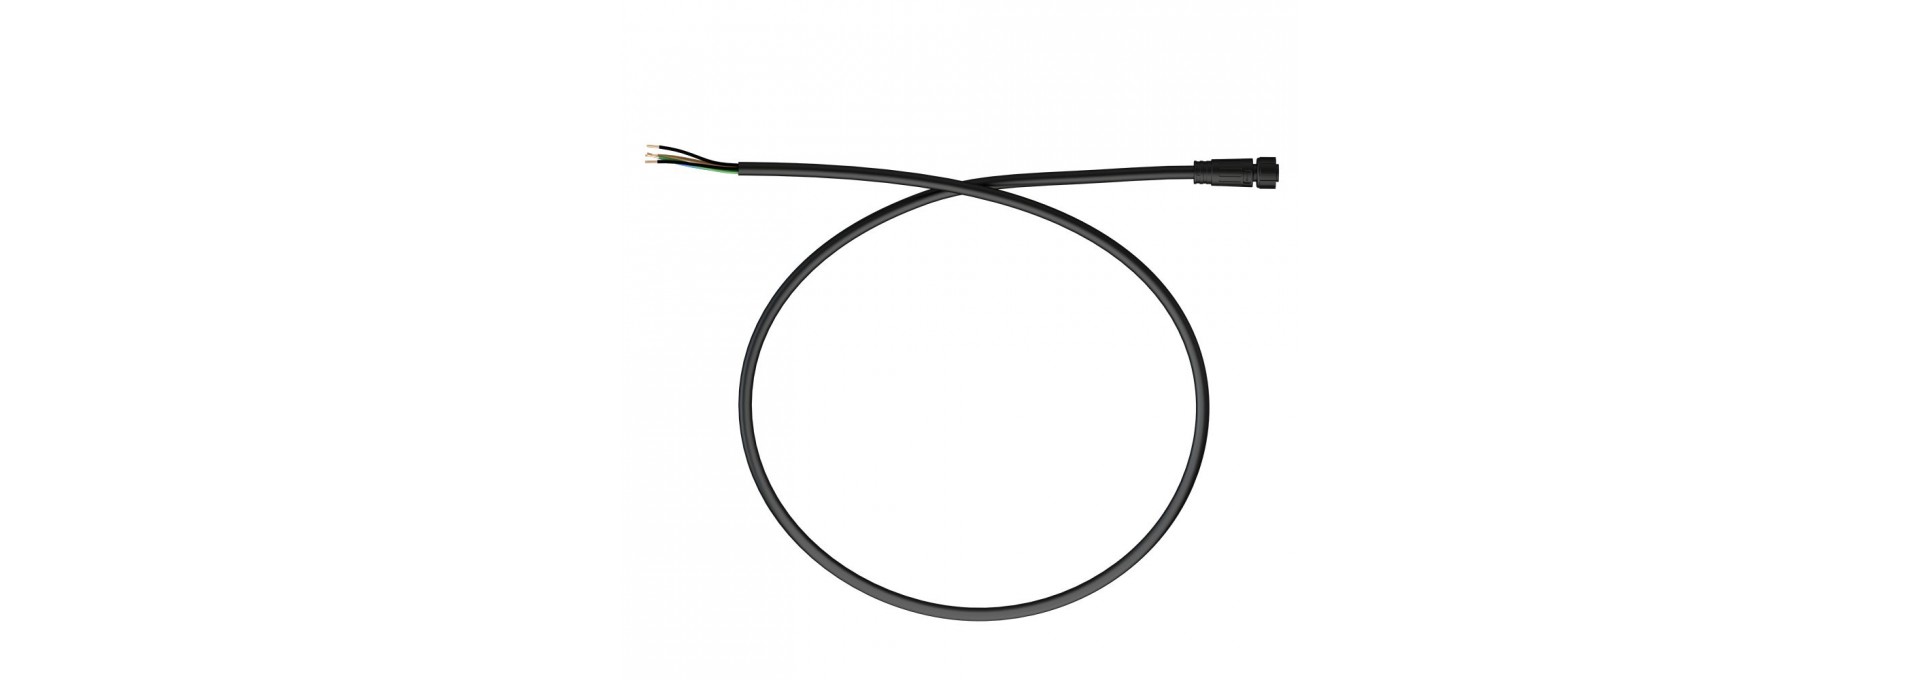 Вводной кабель с разъемом DMX. 3м